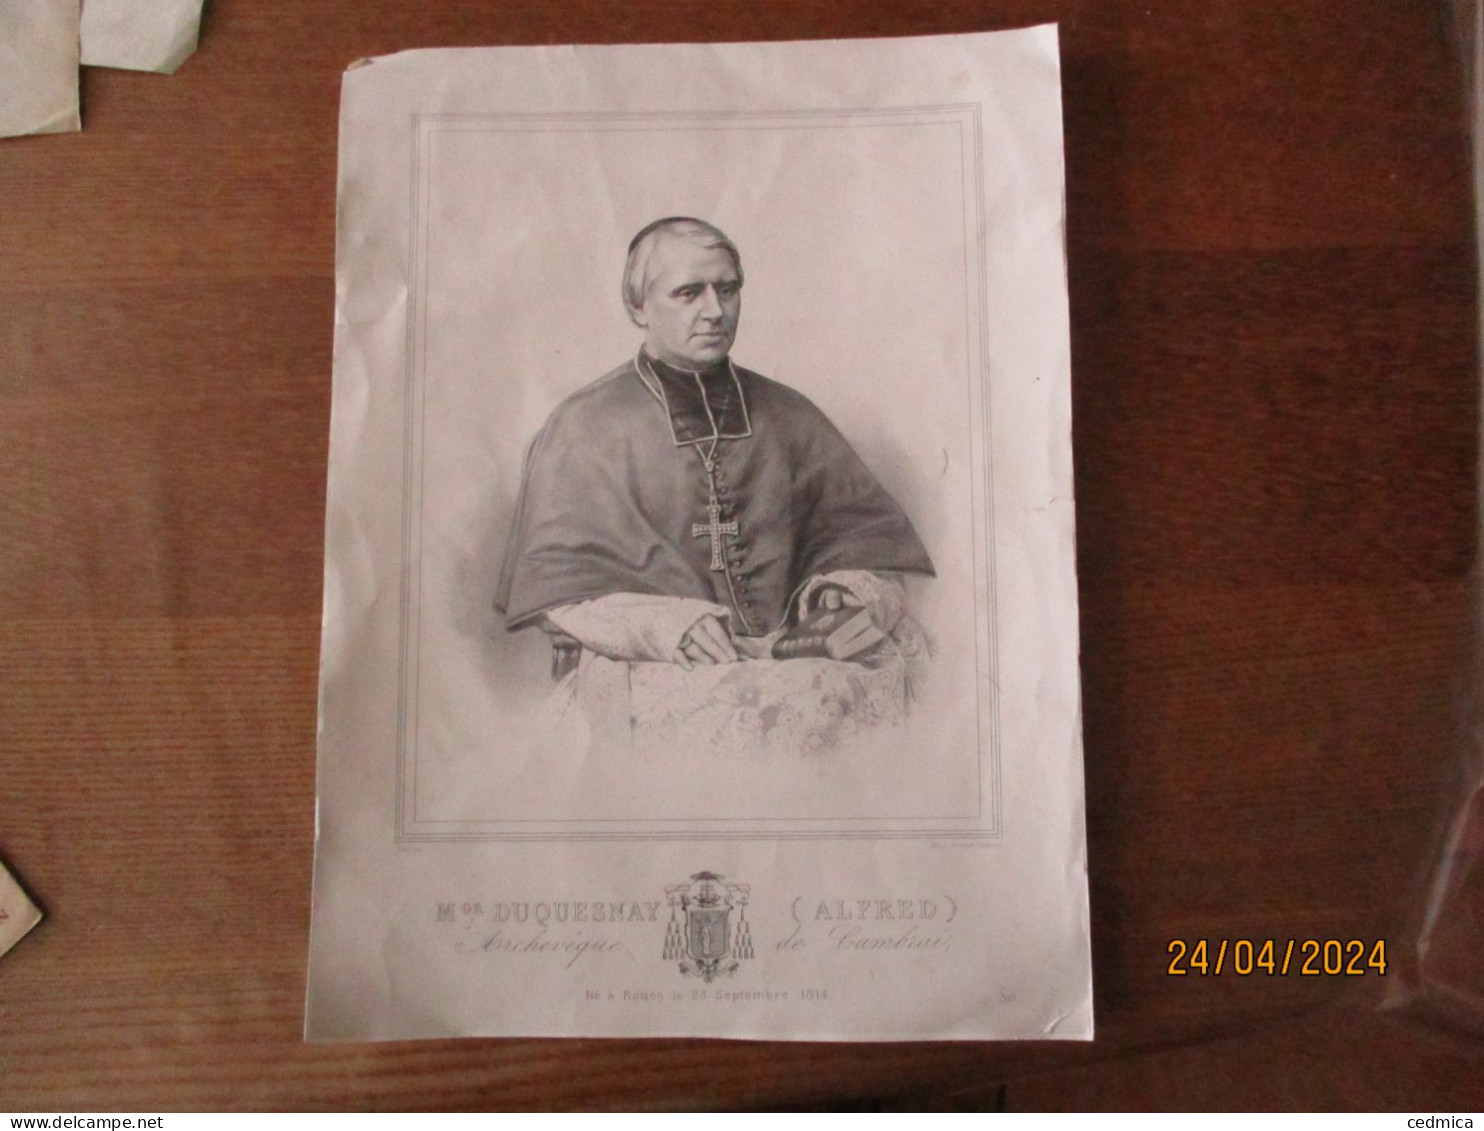 Mgr DUQUESNAY (ALFRED) ARCHEVÊQUE DE CAMBRAI NE A ROUEN LE 23 SEPTEMBRE 1814 LITH.J.RENANT CAMBRAI 36cm/26cm - Religion & Esotericism